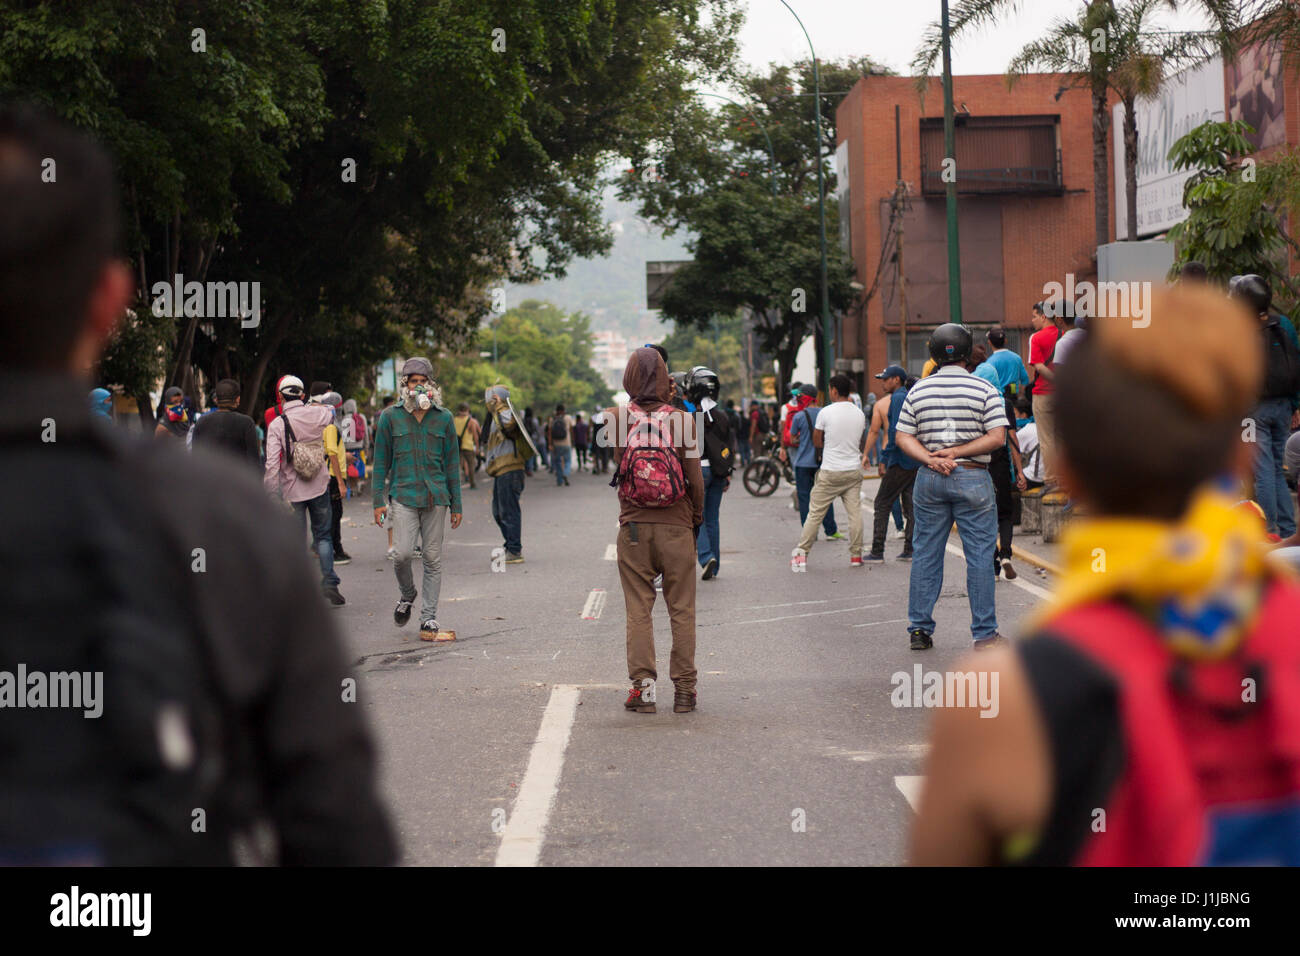 Caracas, Venezuela, 21 avril, 2017. Les manifestants dans une rue à Caracas au cours d'une émeute contre le gouvernement de Nicolas maduro. Banque D'Images